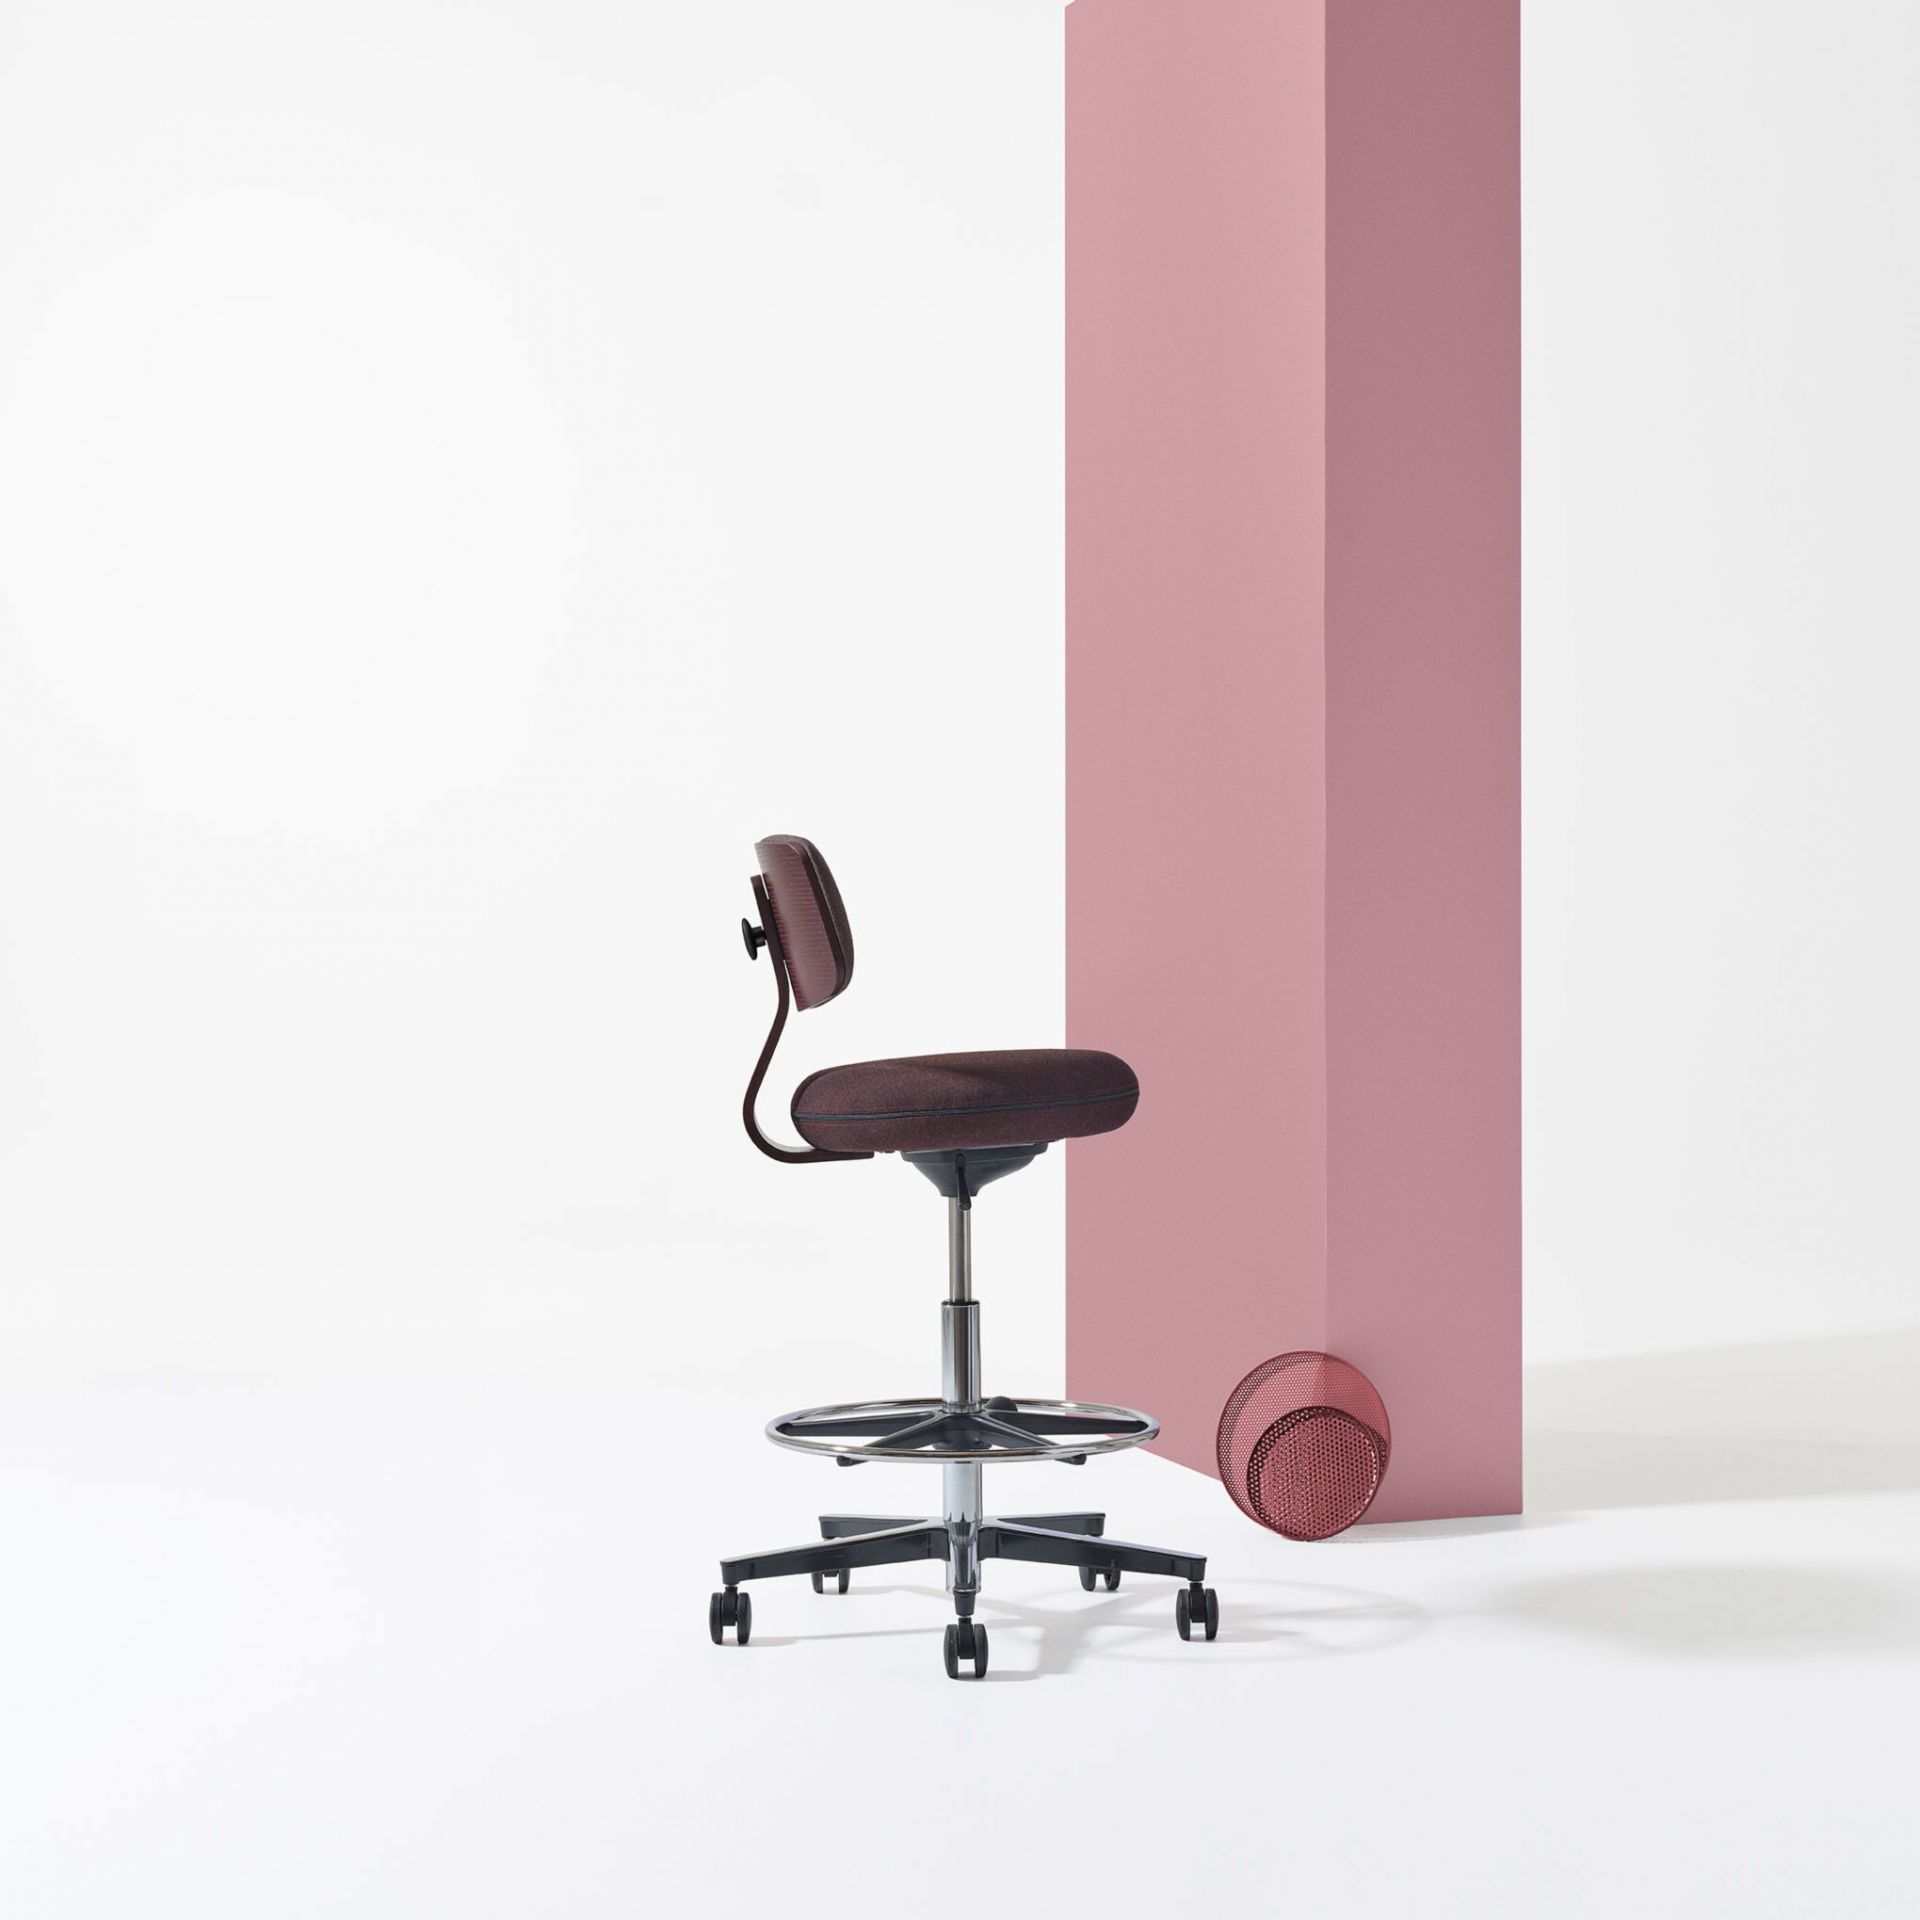 Savo 360 360 høy stol product image 2